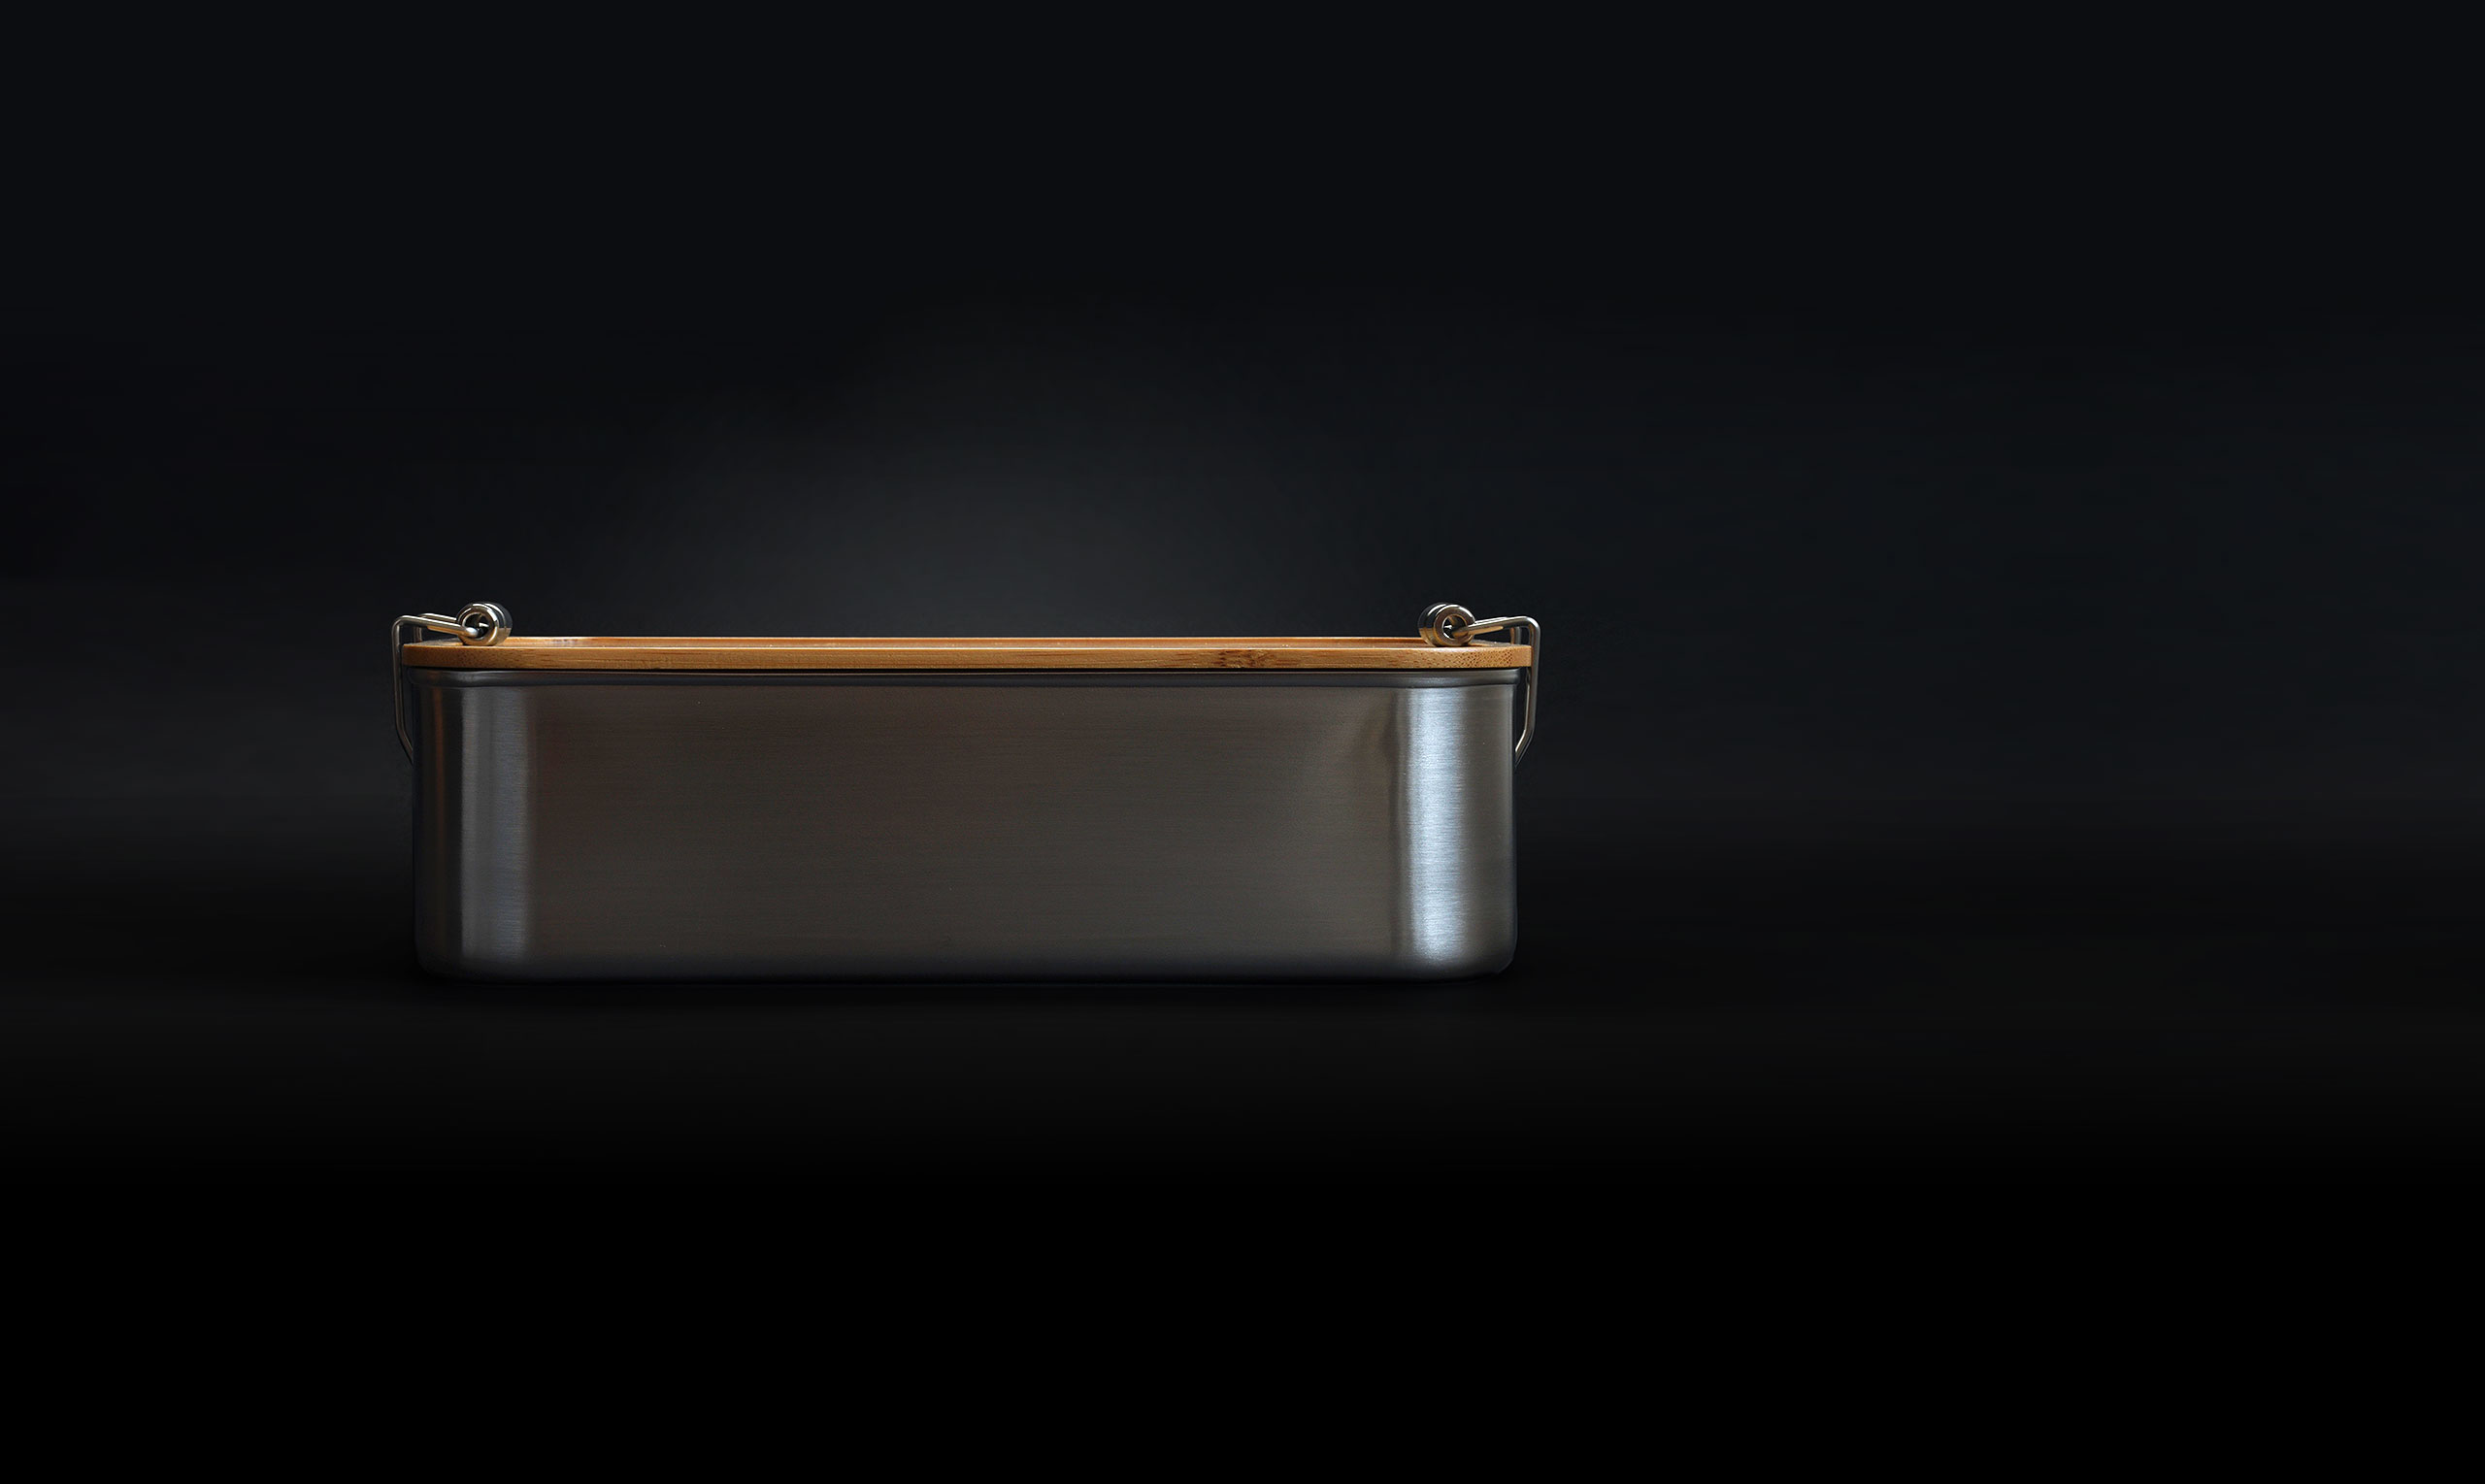 Lunchbox aus Edelstahl mit Bambusdeckel und Clip-Verschlüssen. Seitenansicht vor dunklem Hintergrund.